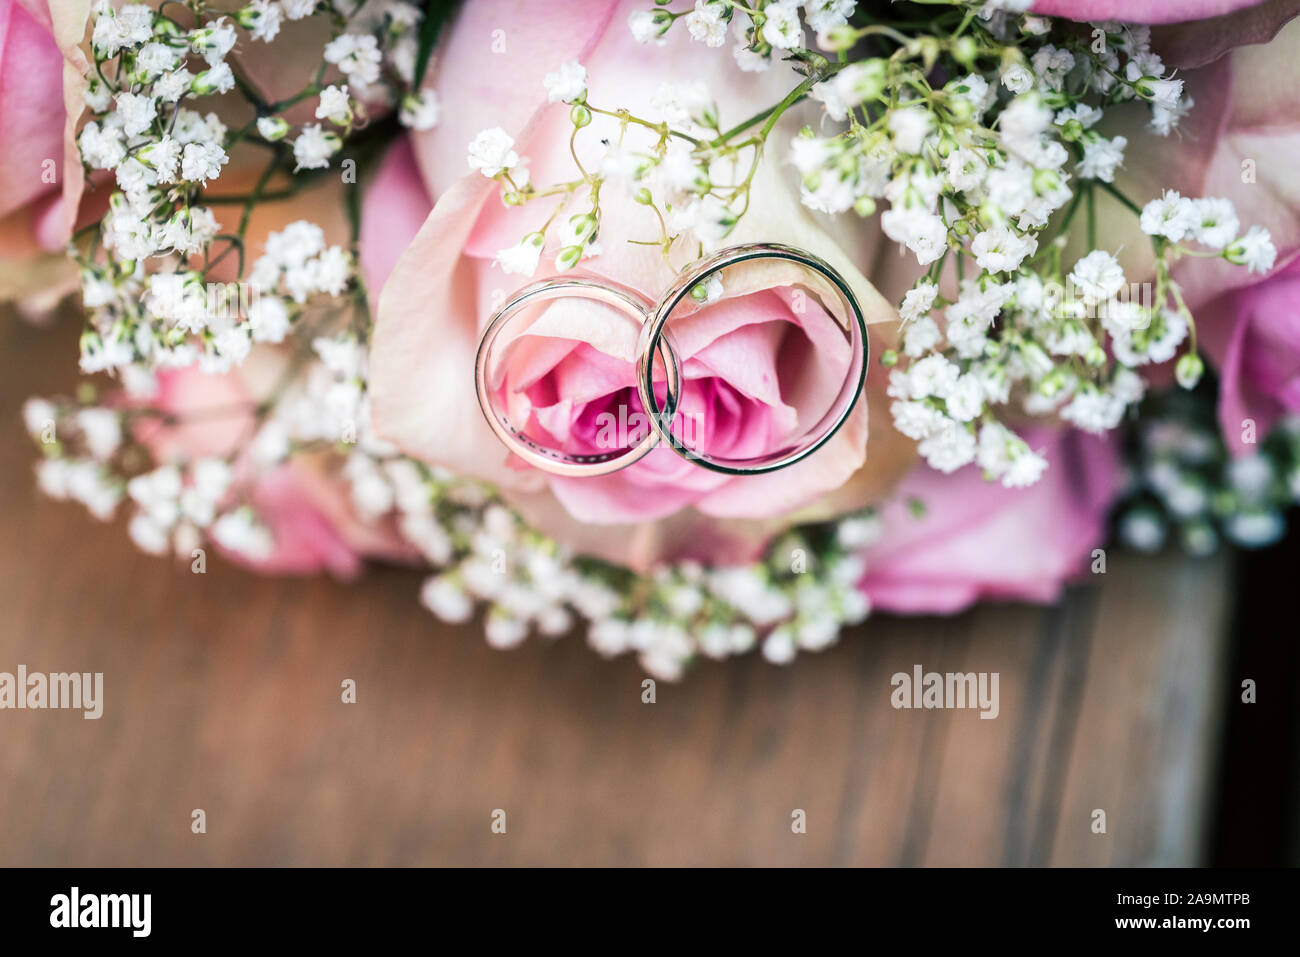 Wedding Bouquet mit rosa Rosen auf Holztisch mit Ringen. Hochzeit Ringe und schöne Hochzeit Strauß auf natürliche Holz Schreibtisch mit Natur in backgrou Stockfoto